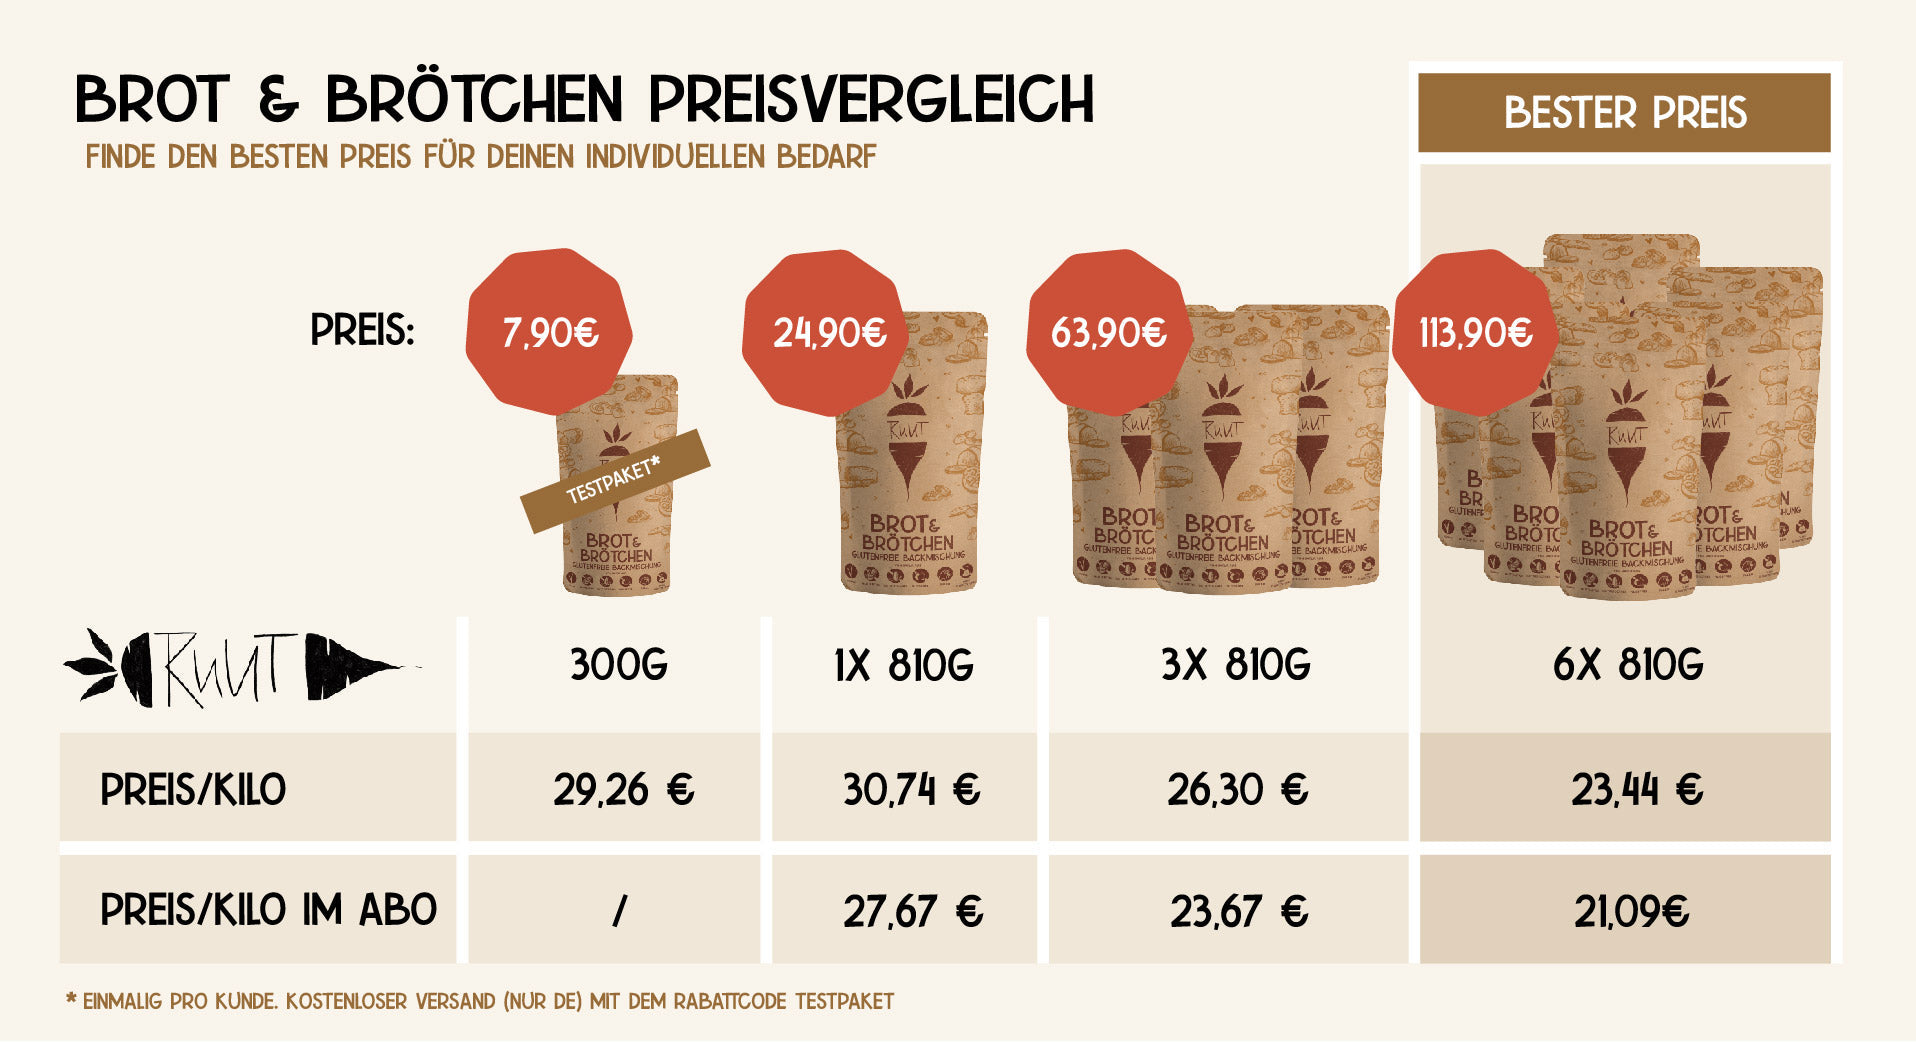 Brot & Brötchen Preisvergleich